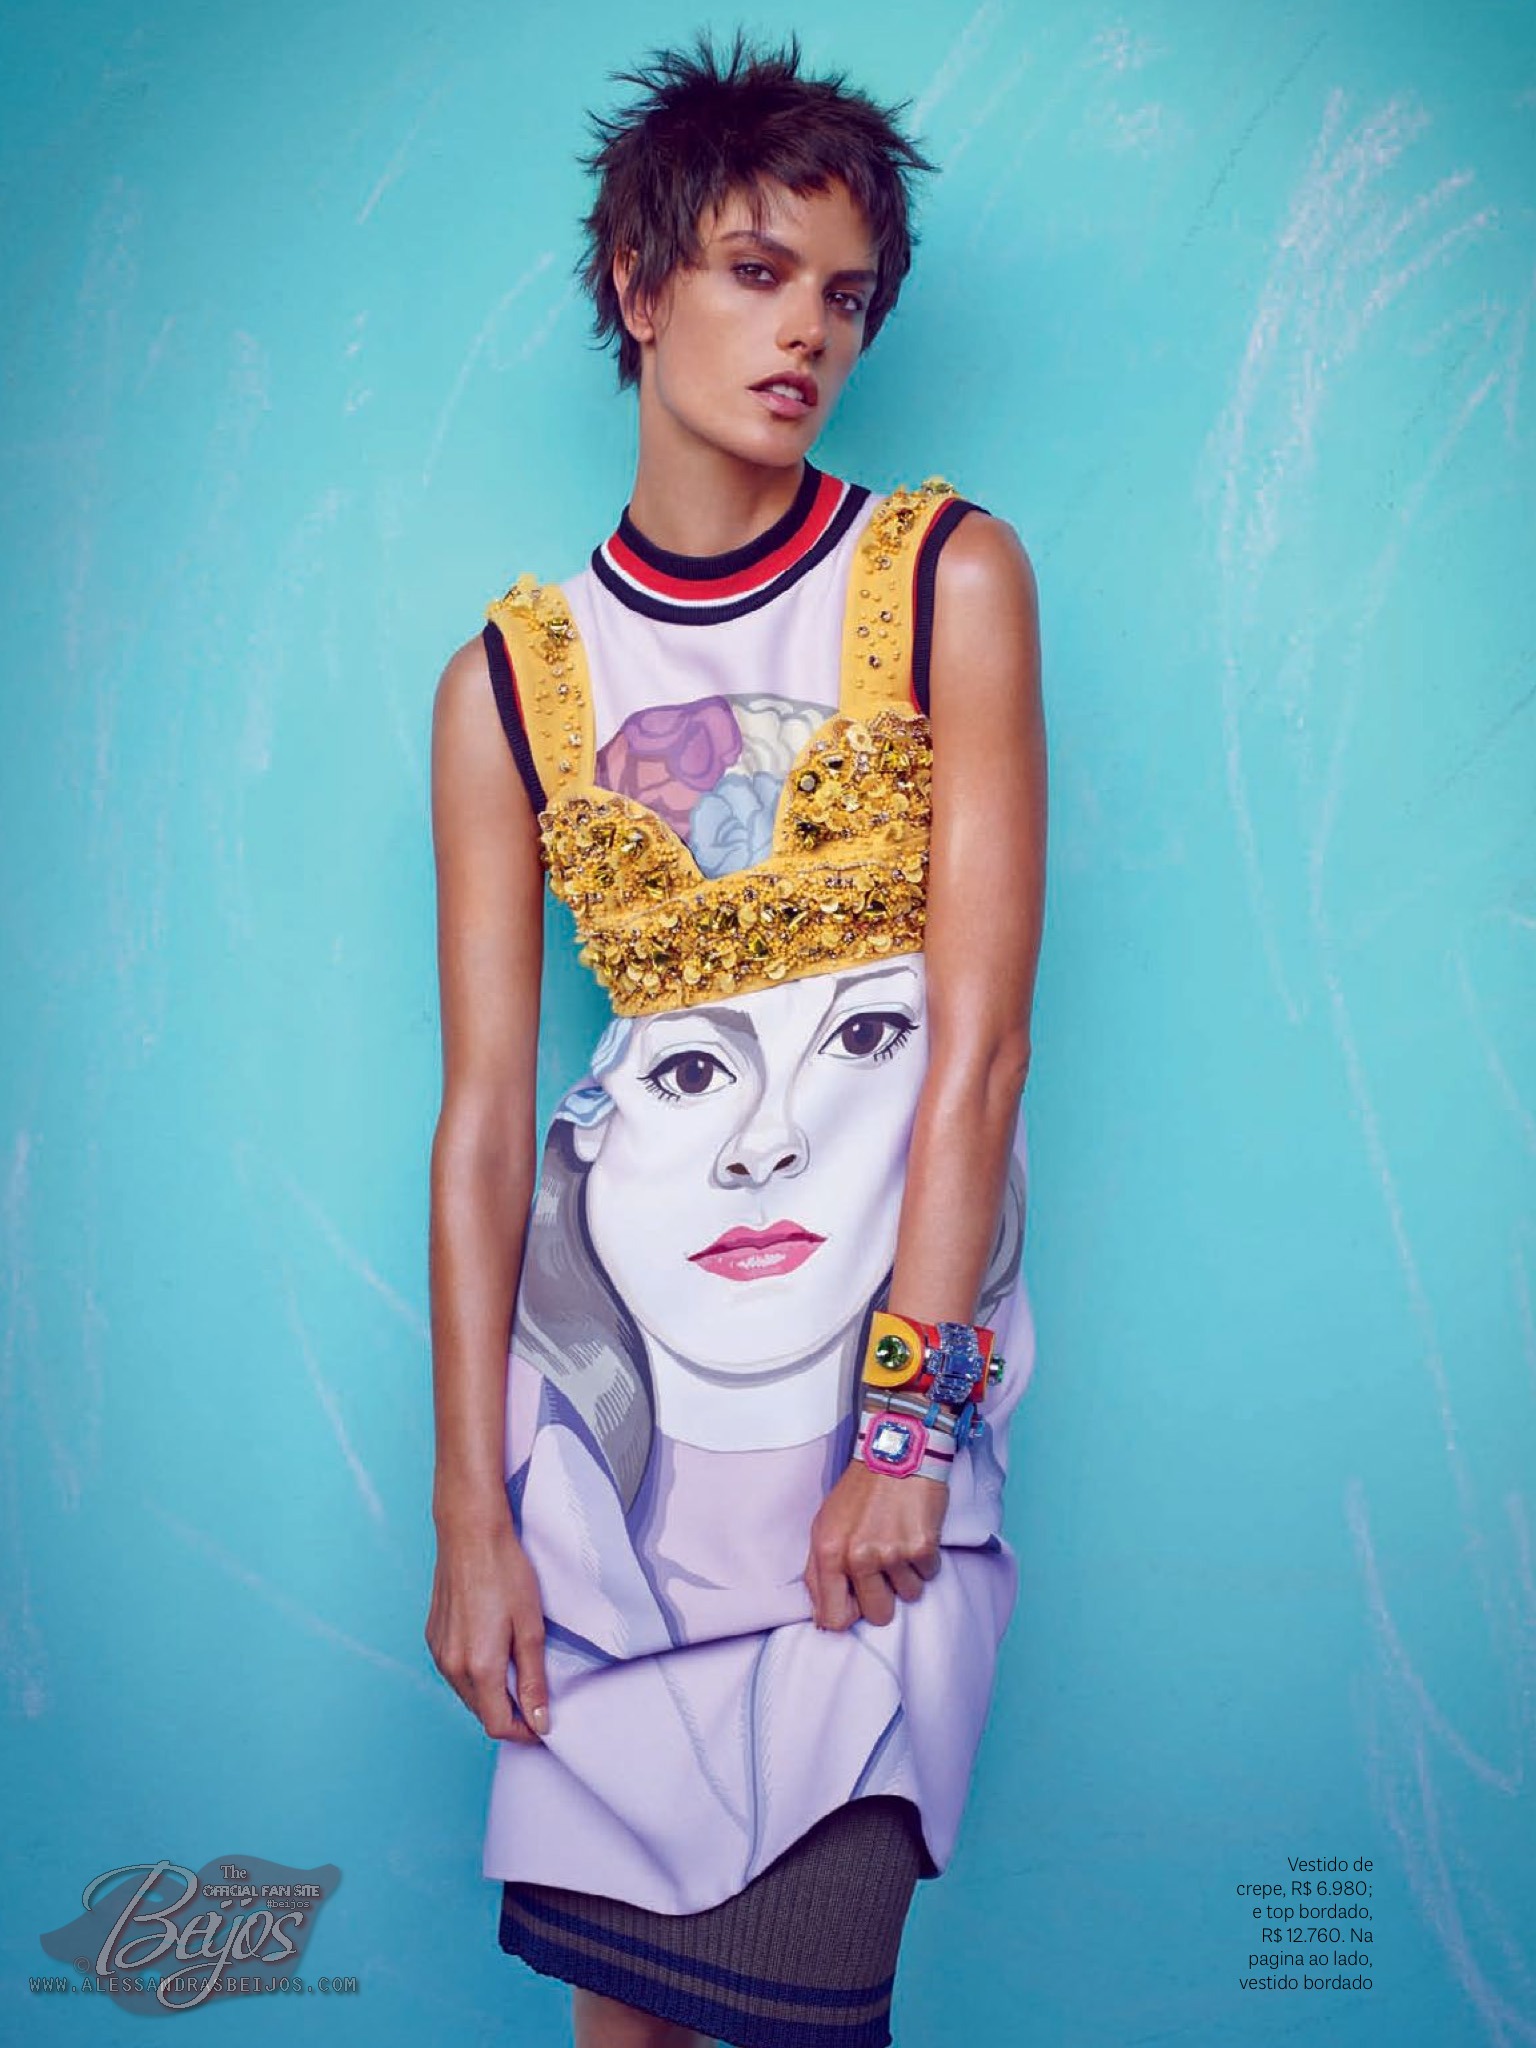 صور اليساندرا أمبروسيو على مجلة Vogue البرازيل مارس 2014